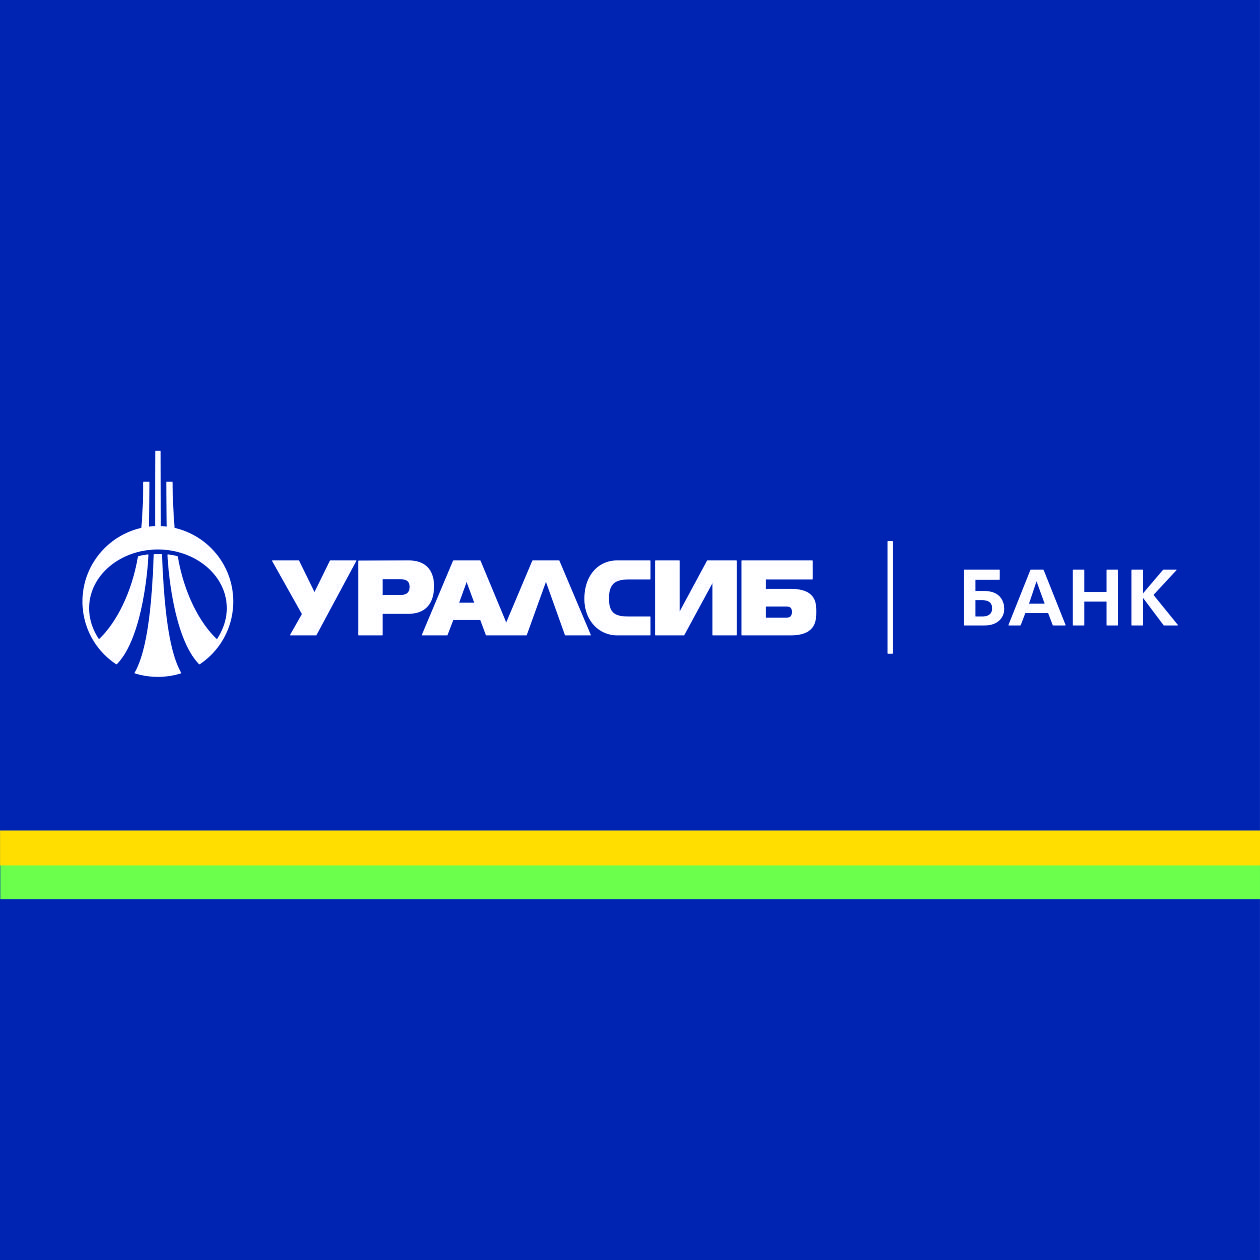 Банк УРАЛСИБ выступит партнером мероприятия «ОПОРЫ РОССИИ», посвященного  реализации федеральных проектов по  развитию и поддержке предпринимательства